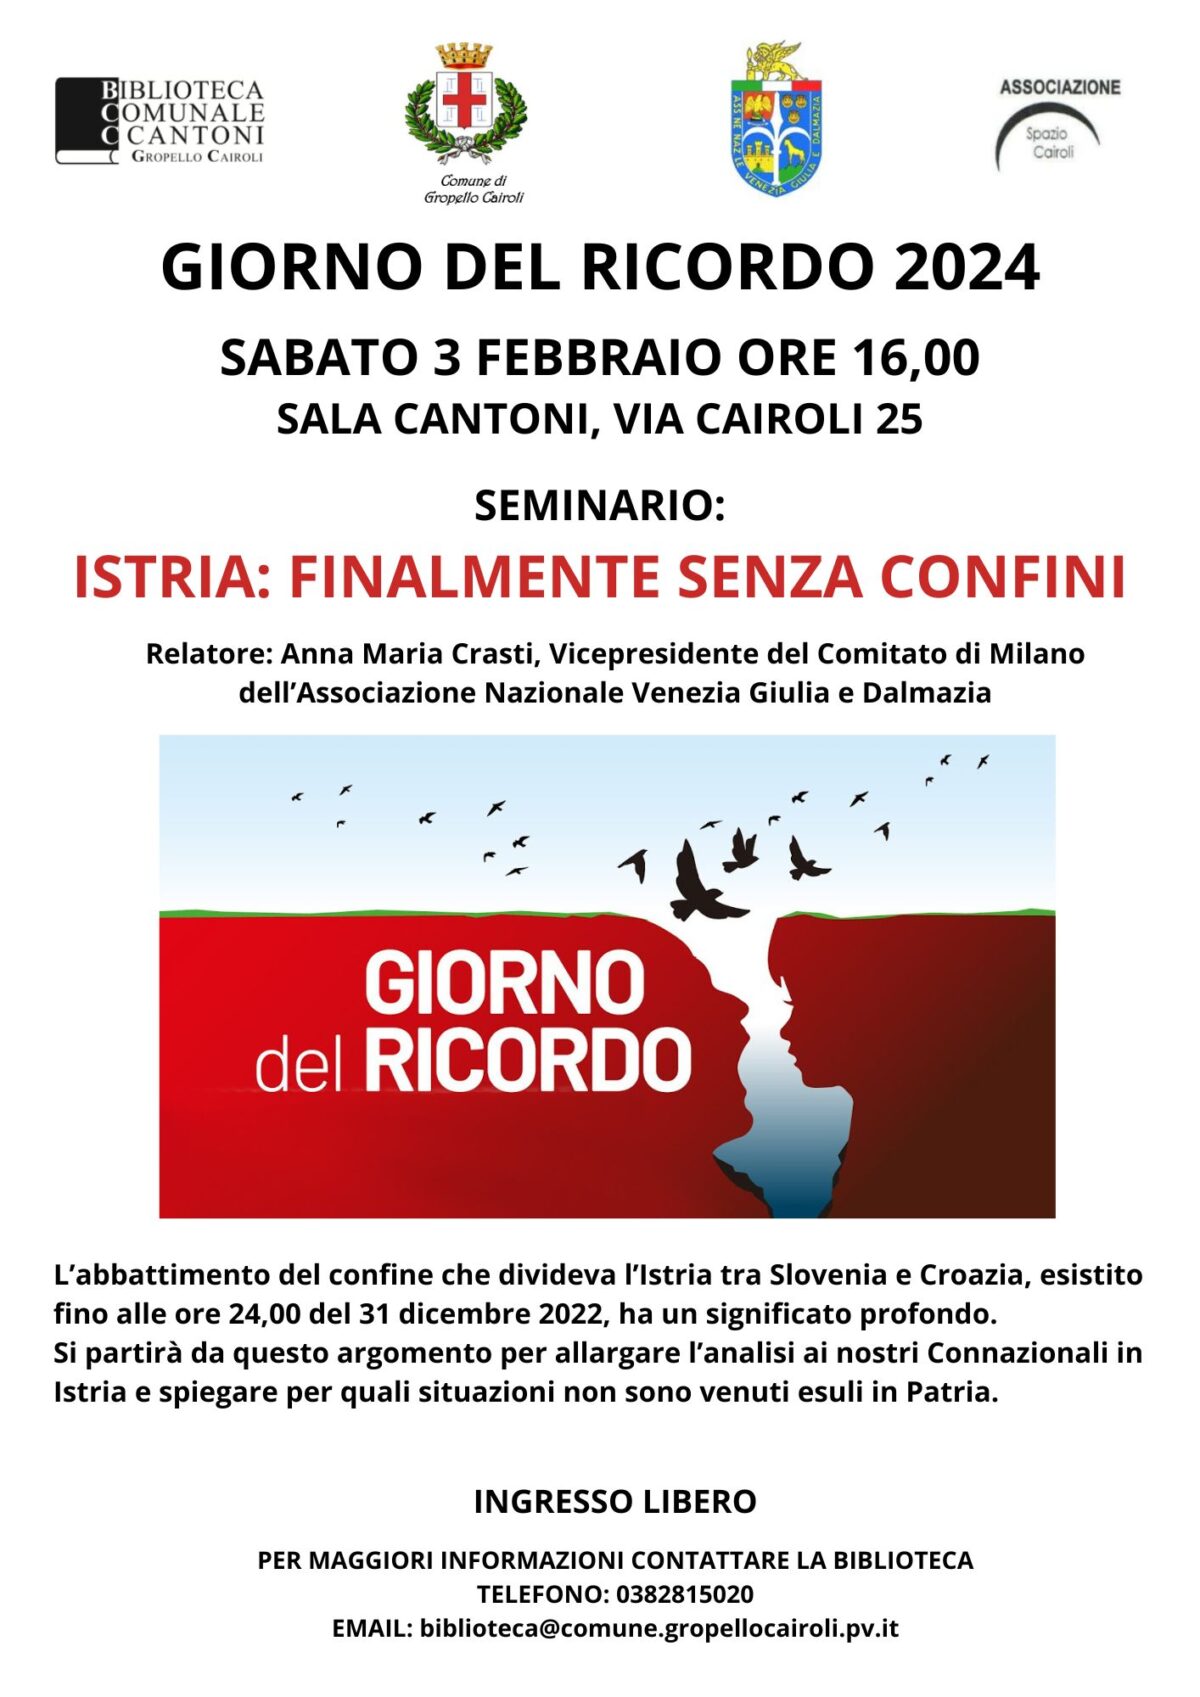 Biblioteca: sabato 3 febbraio seminario “Istria: finalmente senza confini” per il Giorno del Ricordo 2024